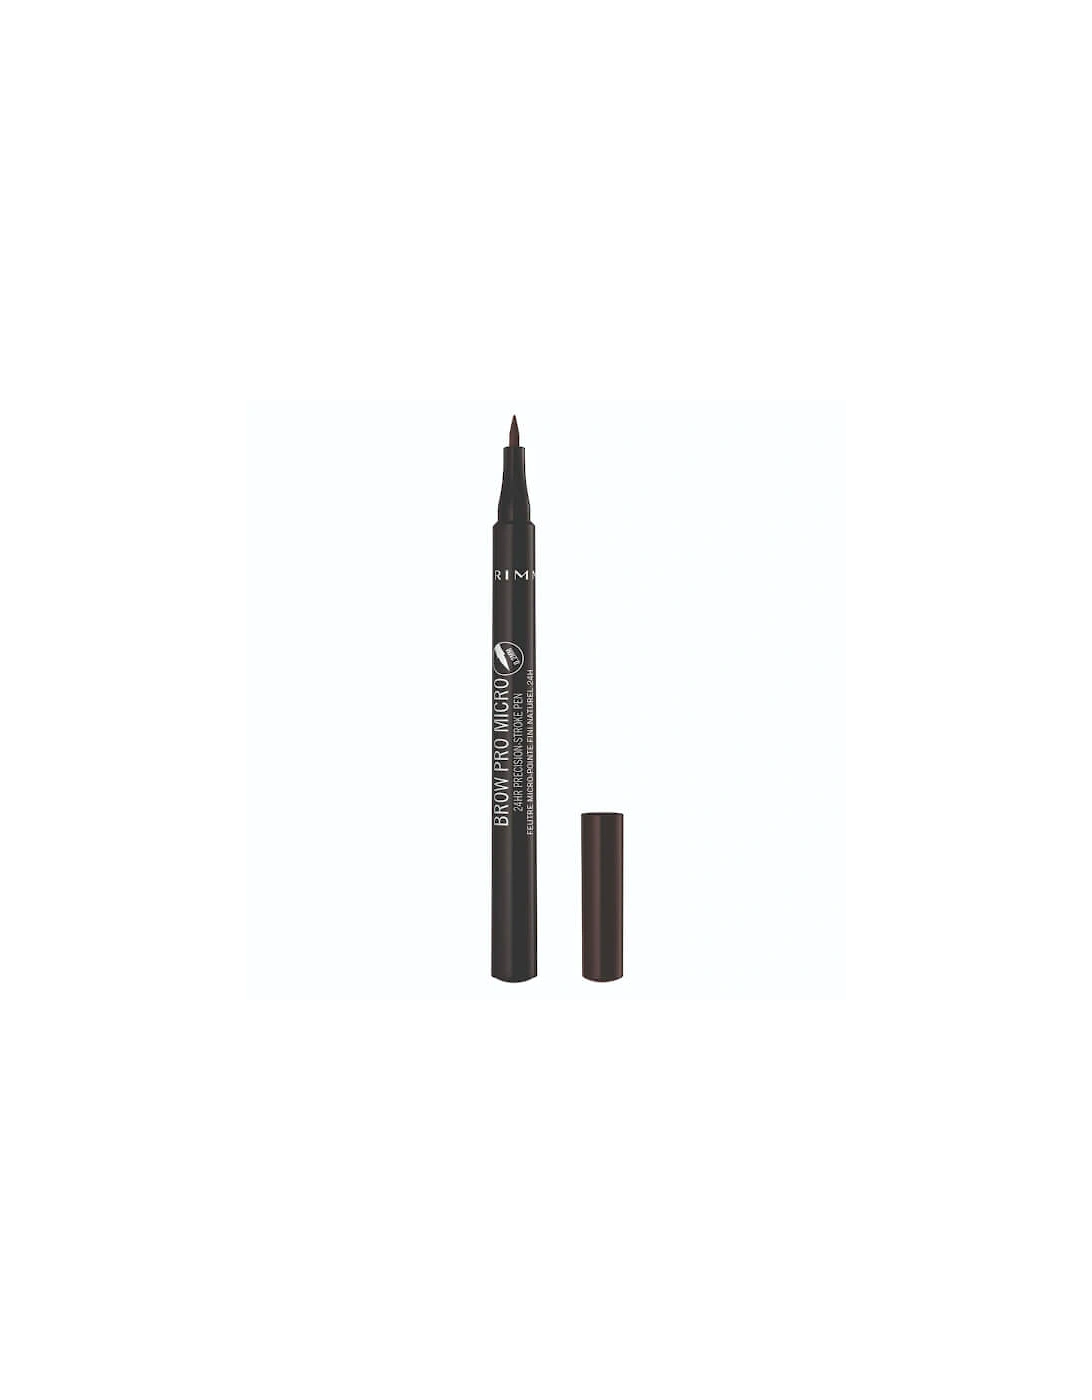 Brow Pro Micro 24HR Precision-Stroke Pen - 004 Dark Brown, 2 of 1